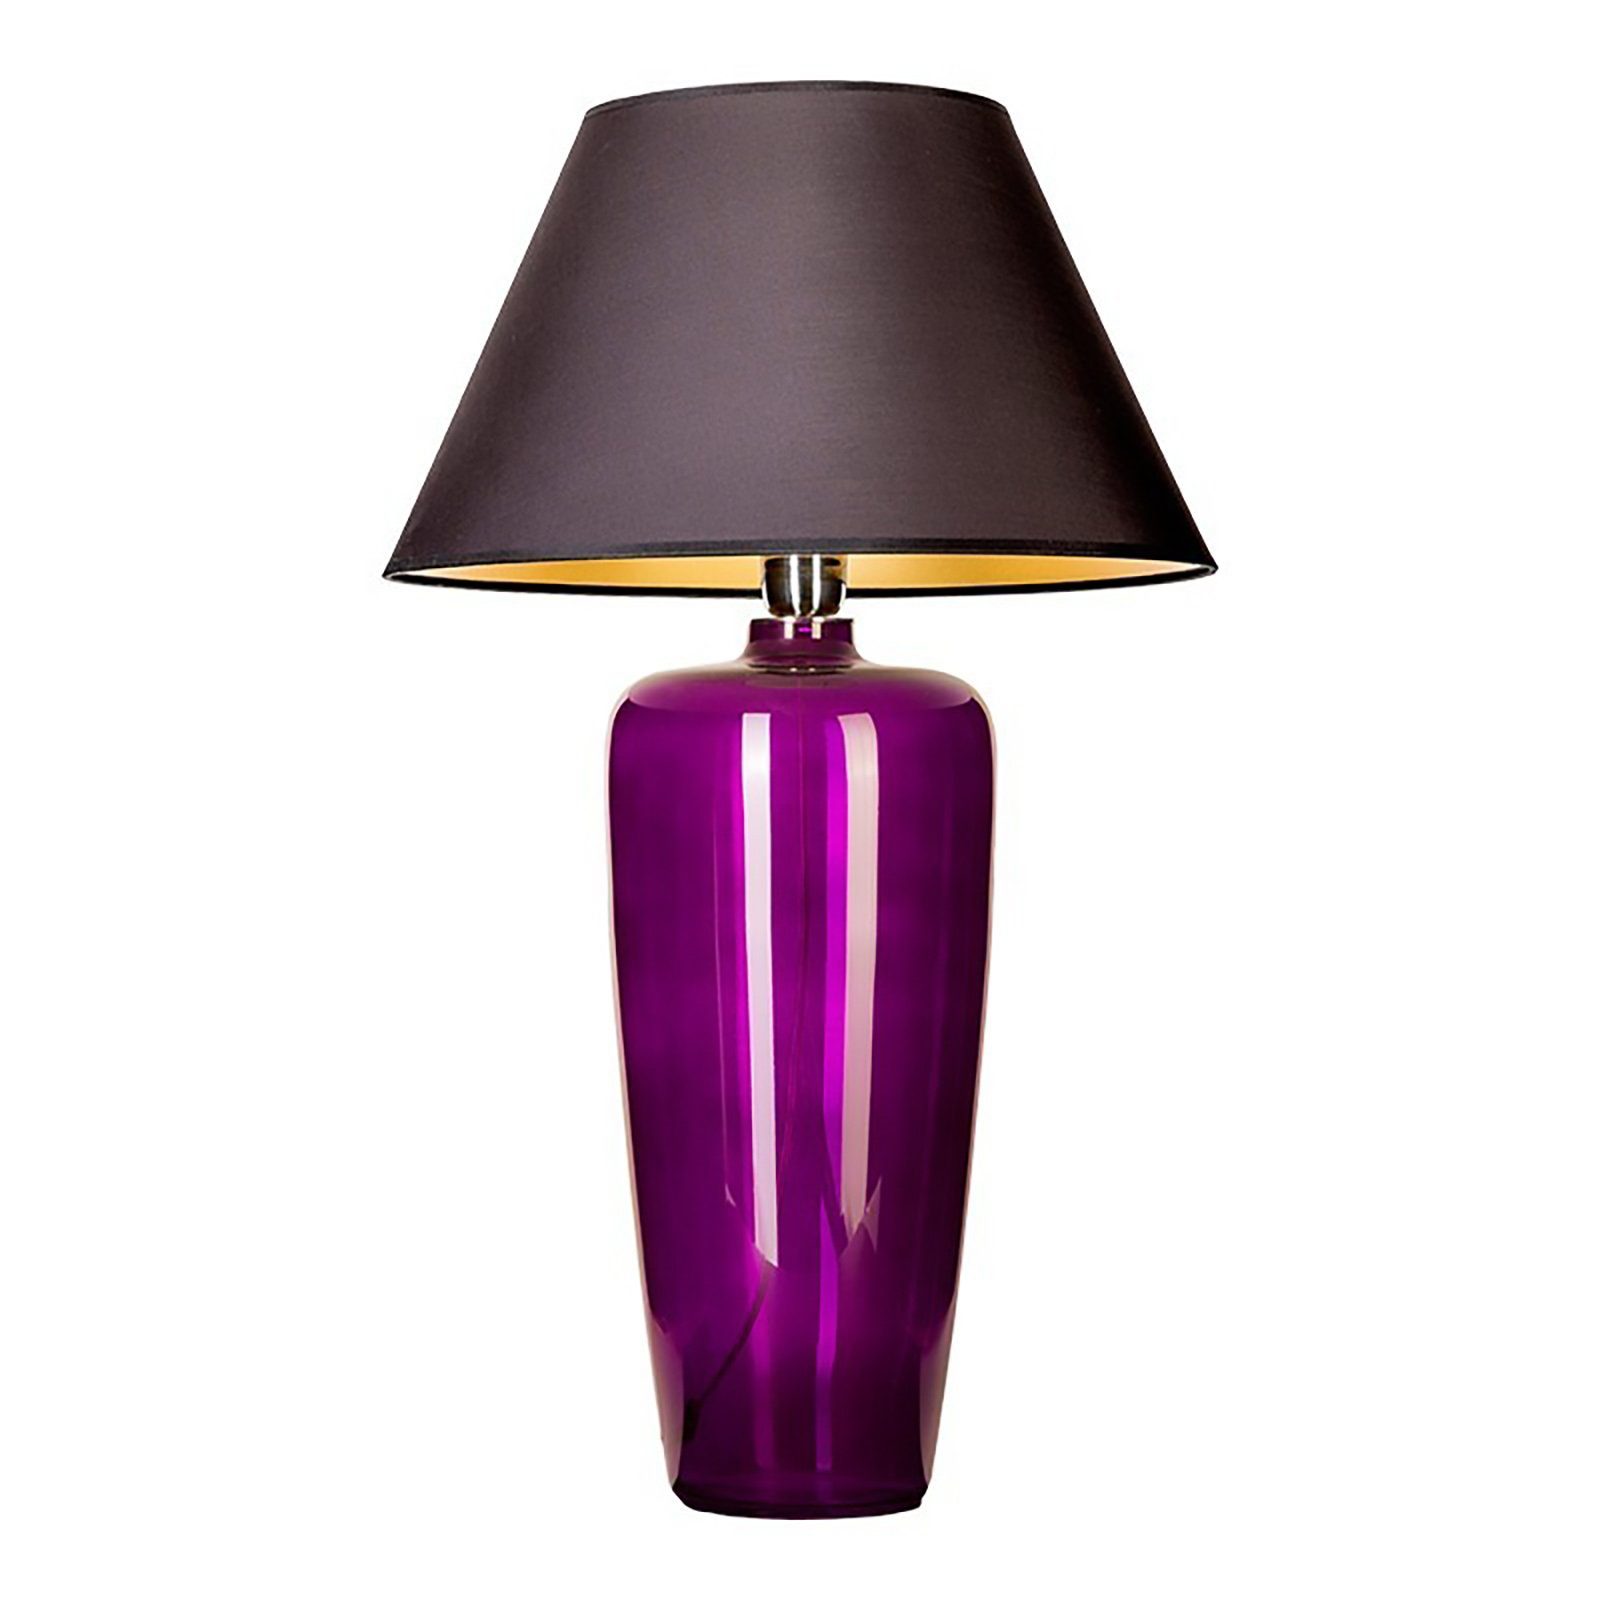 Glaslampe Tischlampe Signature Lampenschirm Home schmal, Collection Leuchtmittel, Glas ohne mundgeblasen Tischleuchte mit aus Warmweiß, lila